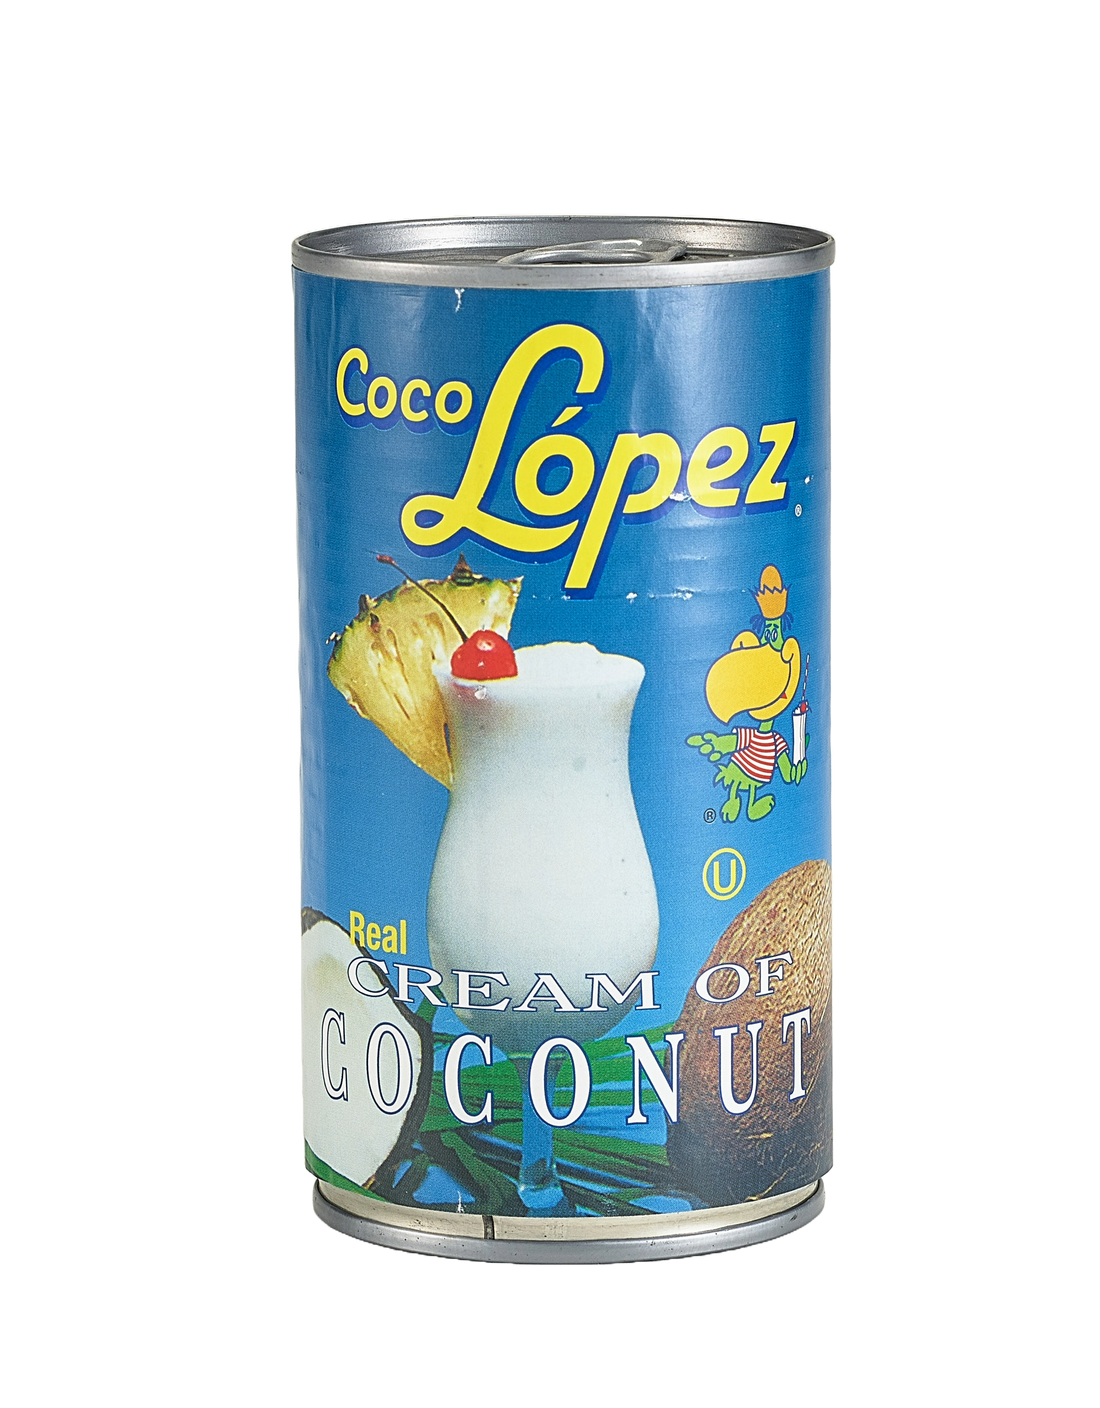 Coco Lopez cream of coconut